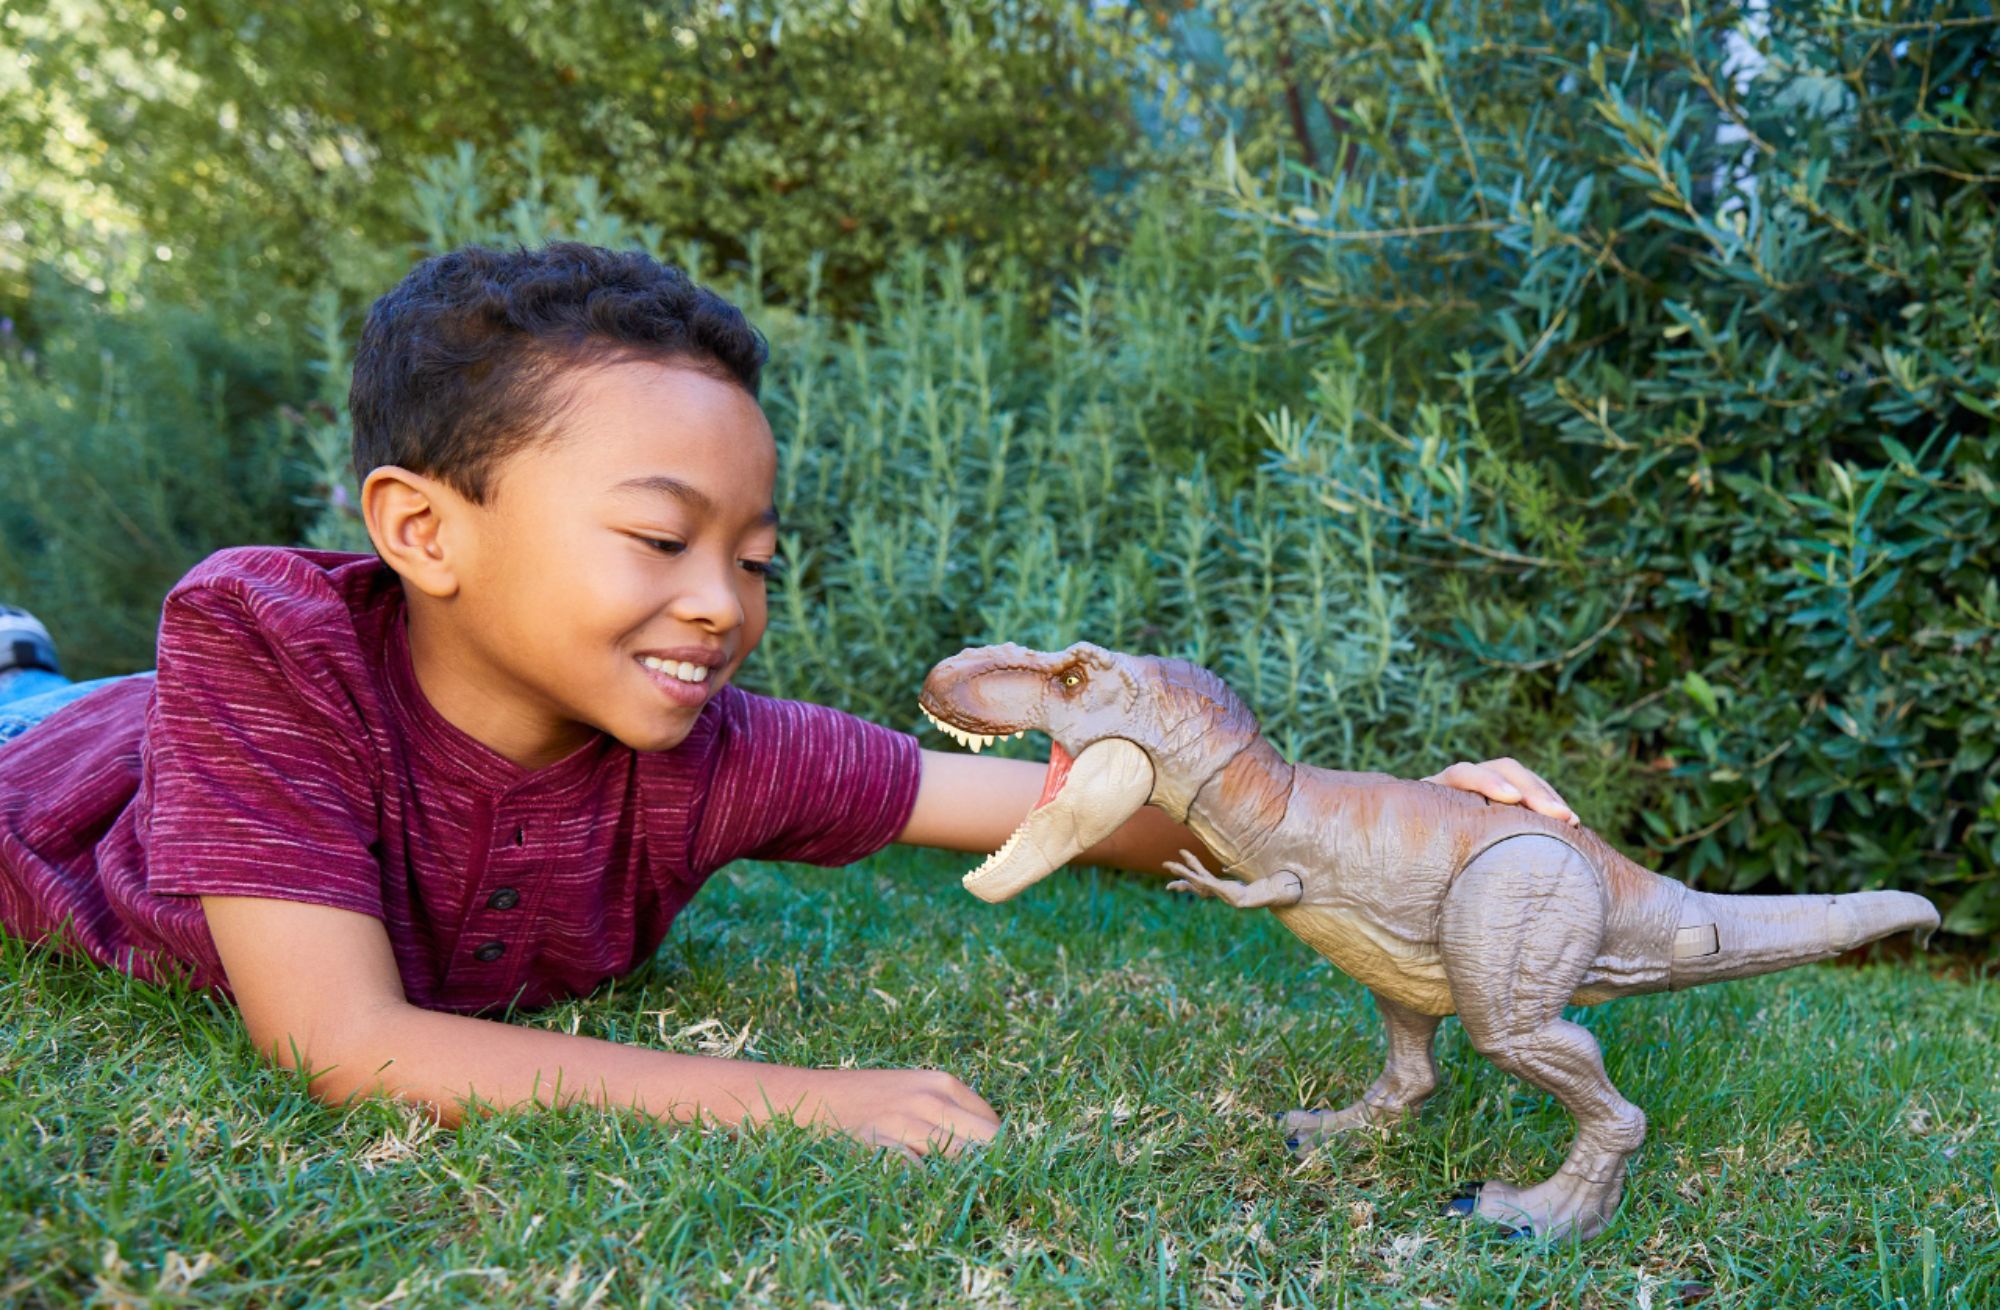 Jurassic World Bite Fight Tyrannosaurus Rex GCT91 - ToysChoose